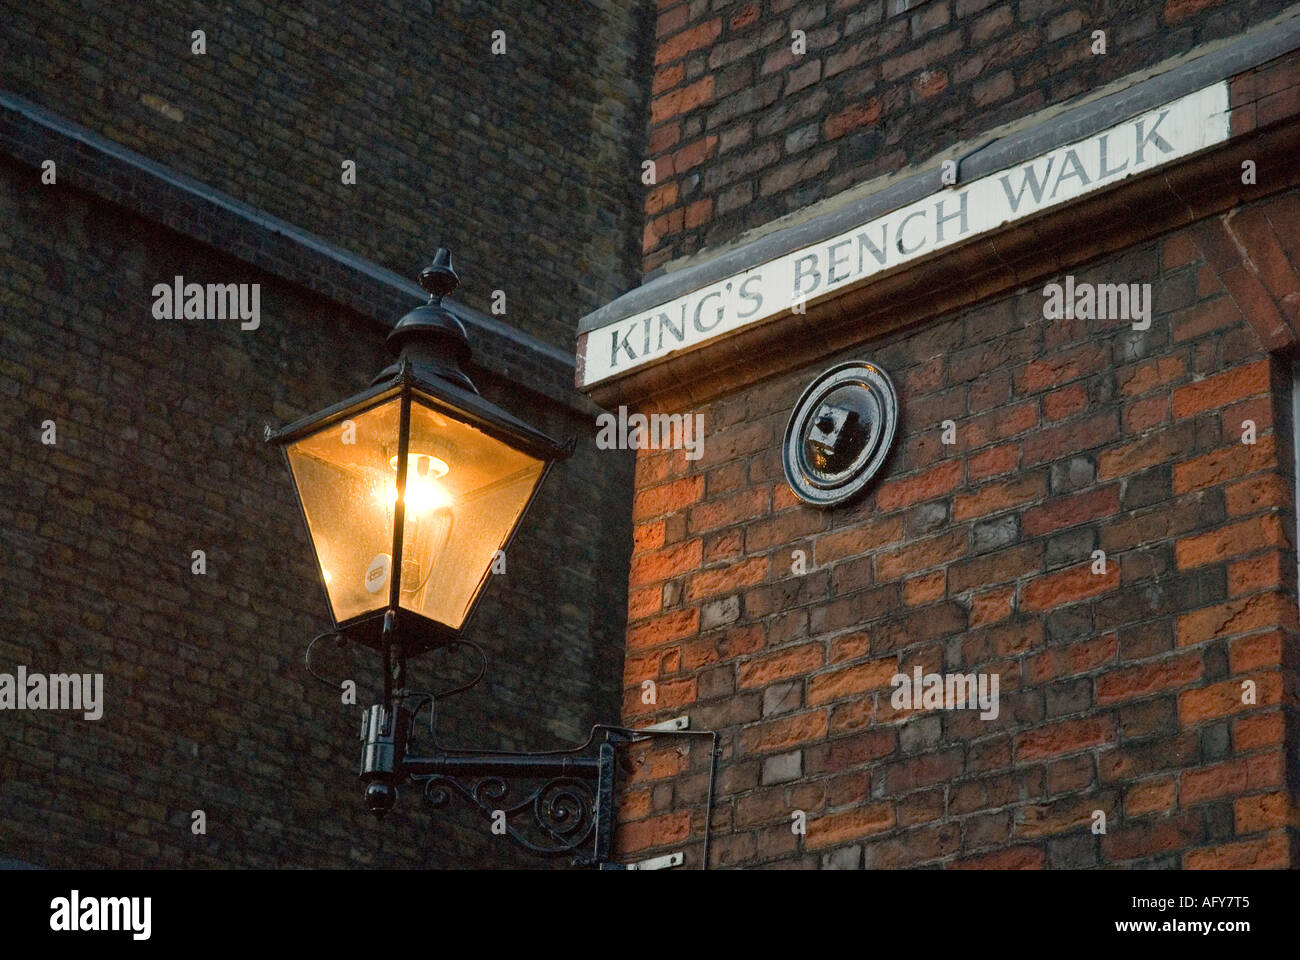 'Kings Bench Walk' Firmar y lámpara de gas de Londres Inglaterra Gran Bretaña Foto de stock